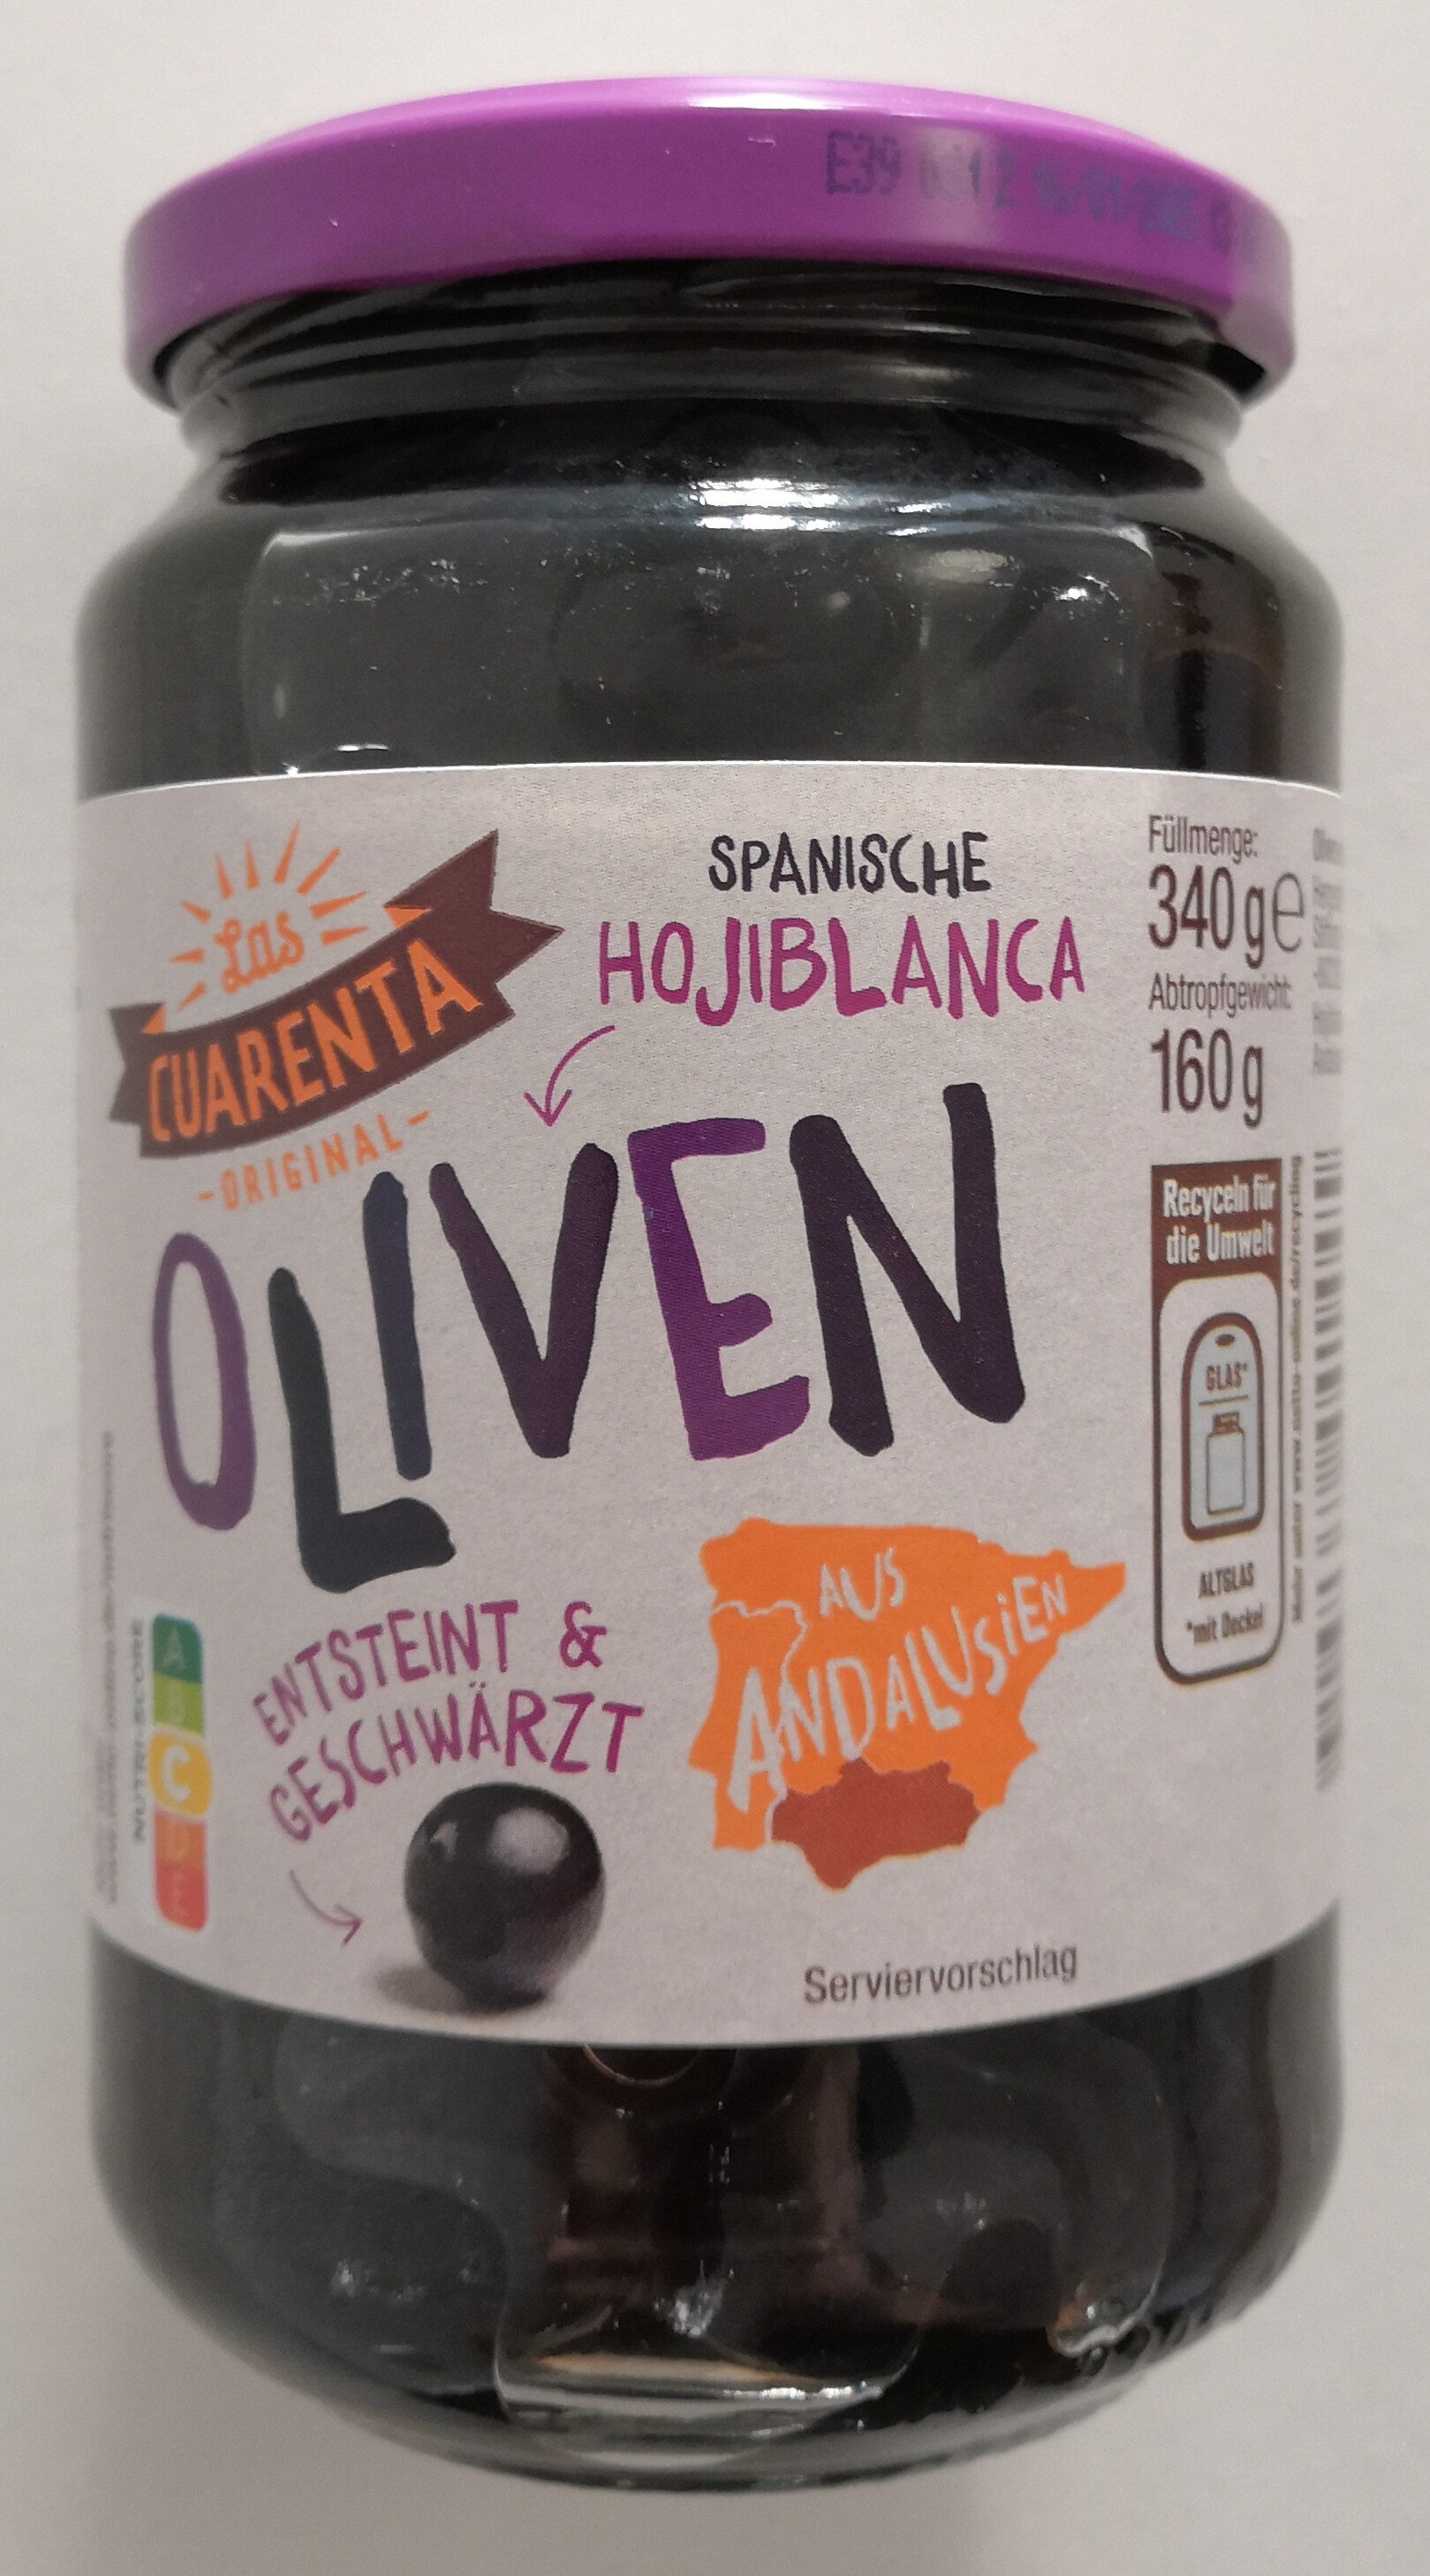 Spanische Hojiblanca Oliven, entsteint & geschwärzt - Produkt - de